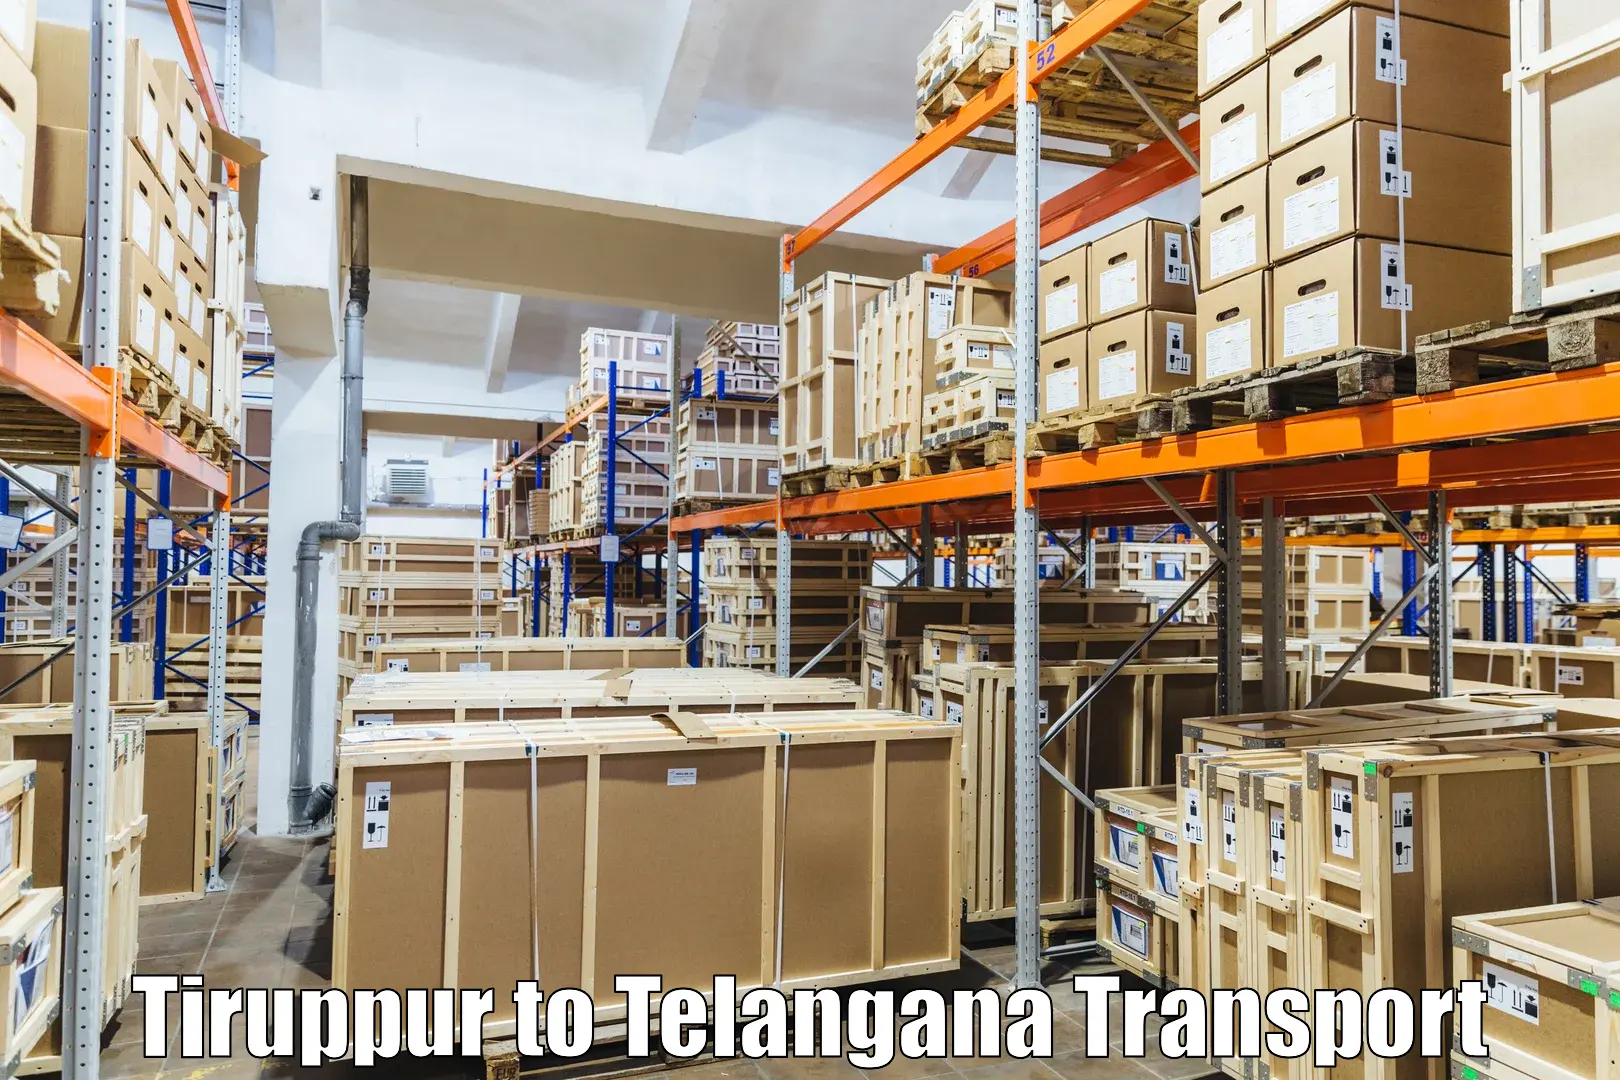 Shipping services Tiruppur to Manneguda